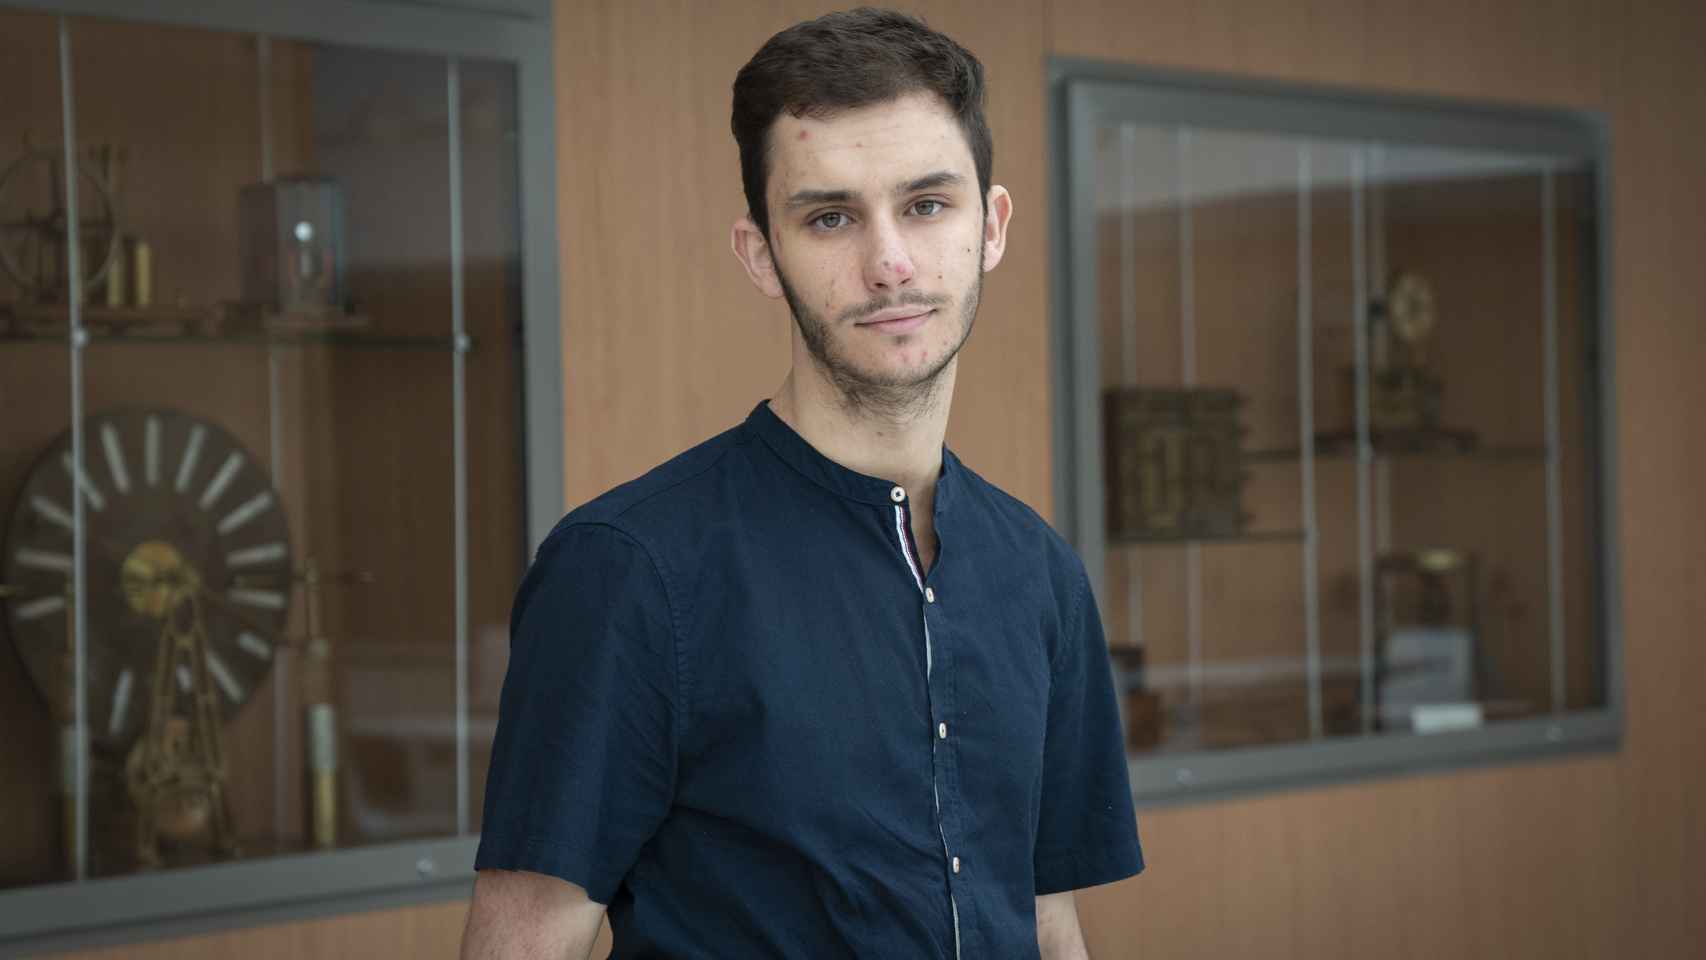 Enrique Sánchez está en cuarto curso y quiere dedicarse a la investigación matemática avanzada.